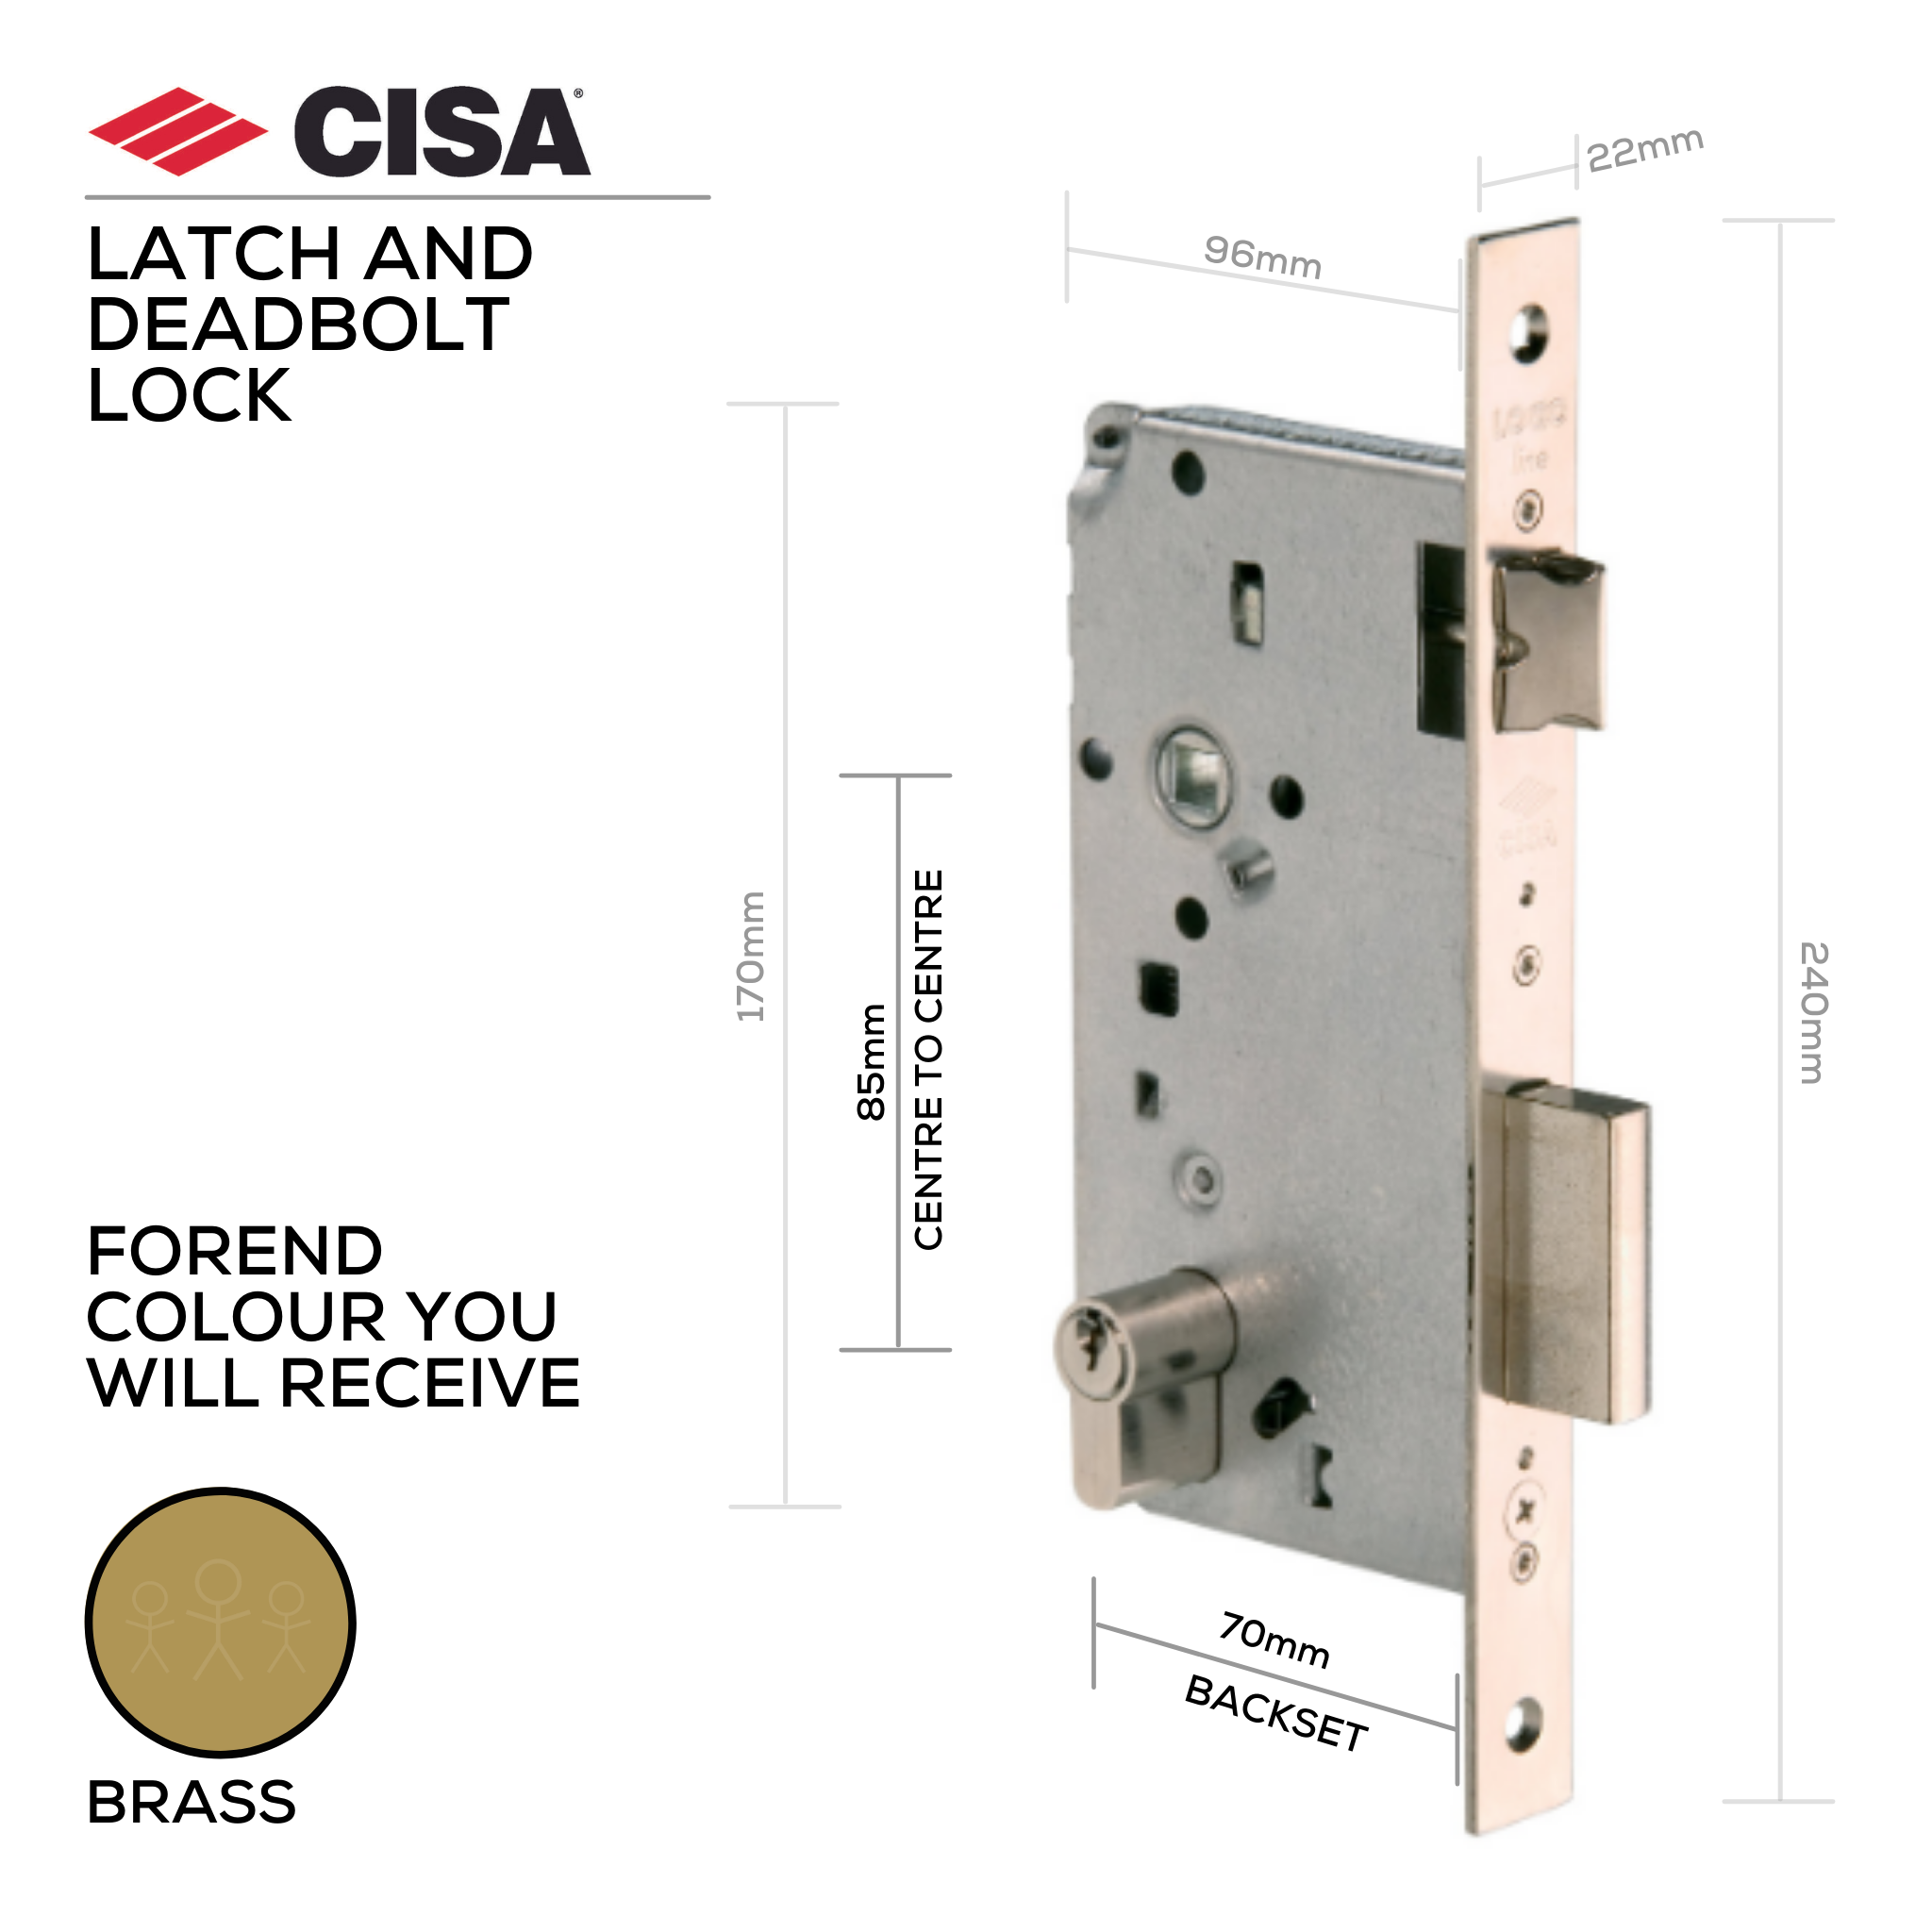 5C611-70-00, Latch & Deadbolt Lock, Euro Cylinder, Excluding Cylinder, 70mm (Backset), 85mm (ctc), Brass, CISA